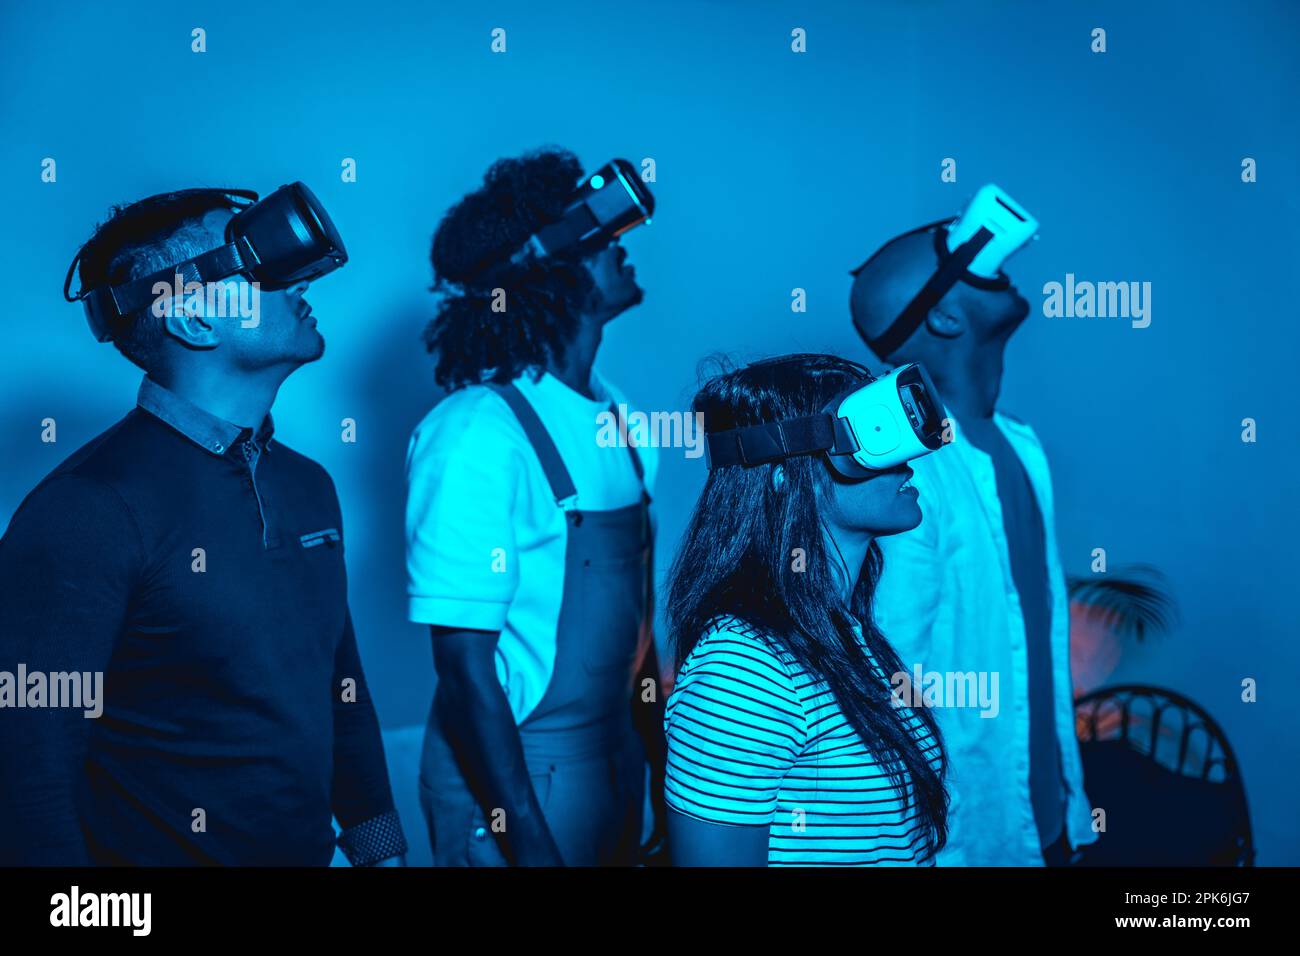 Gruppe junger Menschen mit VR-Brille in einem Virtual-Reality-Spiel im blauen Licht, futuristisch oder wissenschaftlich, technologisches Konzept, mit Blick nach rechts Stockfoto